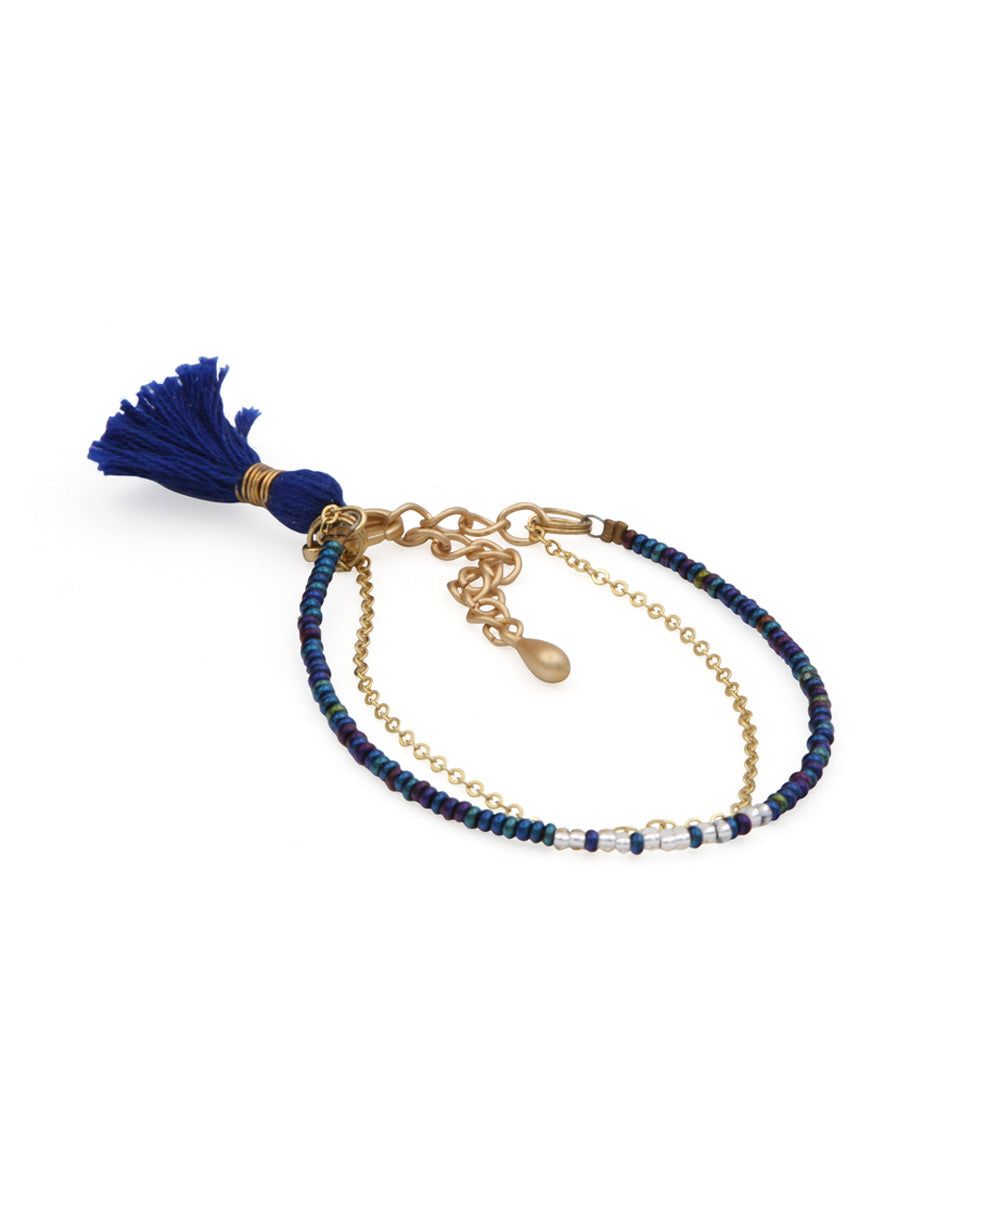 Lena Skadegard Emerald Crochet Tassel Beaded Bracelet